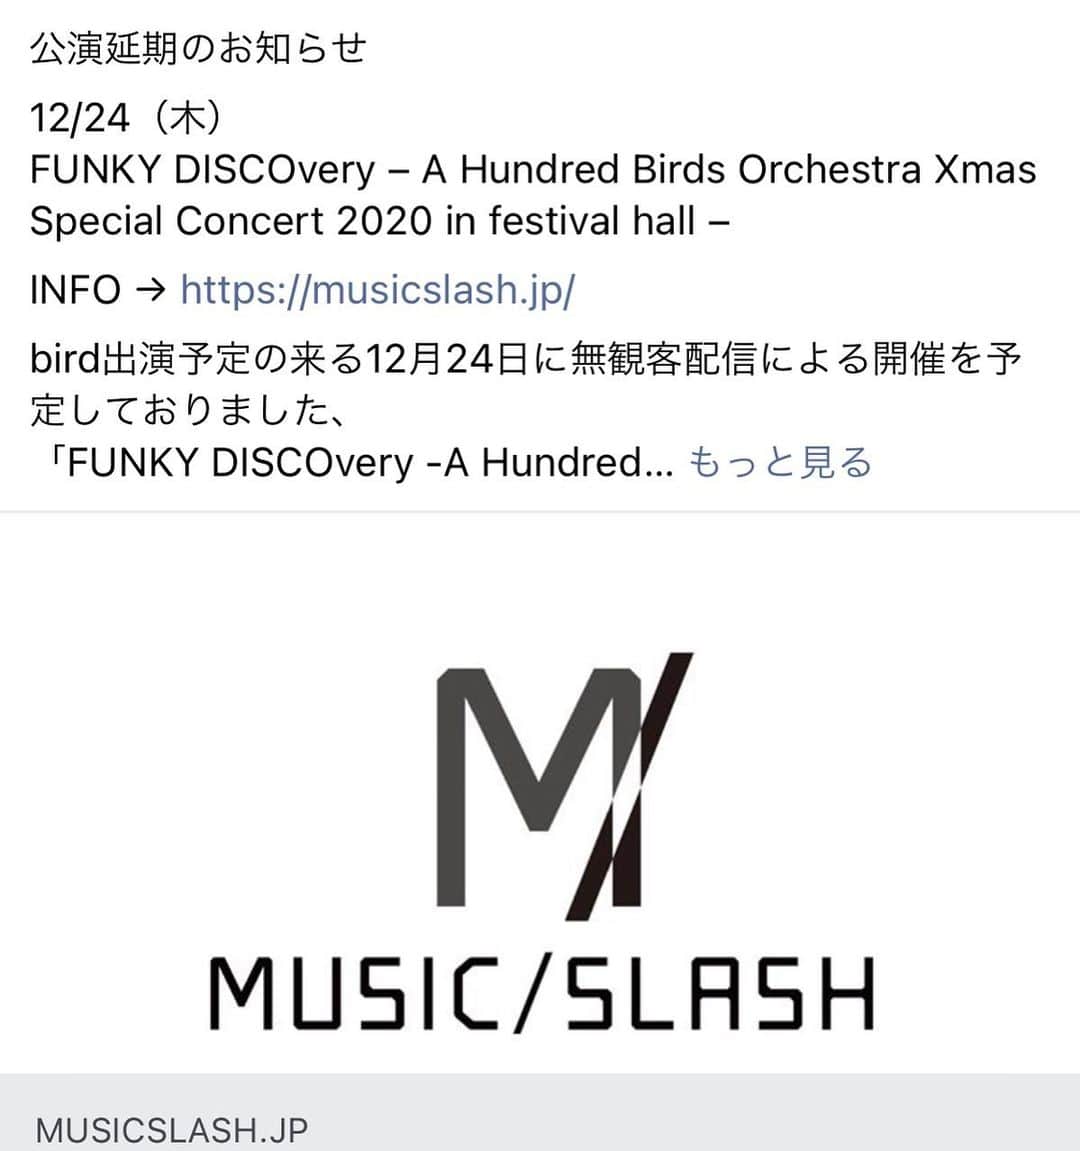 birdのインスタグラム：「公演延期のお知らせです。  公演延期のお知らせ「12/24（木）FUNKY DISCOvery – A Hundred Birds Orchestra Xmas Special Concert 2020 in festival hall –」 INFO → MUSIC/SLASH  bird出演予定の来る12月24日に無観客配信による開催を予定しておりました、 「FUNKY DISCOvery -A Hundred Birds Orchestra Xmas Special Concert 2020 in festival hall-」 は大阪府の医療体制の逼迫状況、大阪府新型コロナ警戒信号「赤色（非常事態）」の継続決定を鑑み、 大編成のオーケストラをはじめ、スタッフを含む総勢１００名に及ぶ公演関係者の移動・リハーサル時等における安全性が懸念されることからコンサートを延期させていただくことになりました。 開催を心待ちにしてくださっていた皆様には心よりお詫び申し上げます。  振替公演の日程等につきましては、2021年の開催を目途に今後調整をおこないます。 振替公演の日程・返金等の詳細が決定次第、ＭＵＳＩＣ／ＳＬＡＳＨのホームページ等でご案内させていただきますので、今しばらくお待ちいただけますと幸いです。  今もなお、私たちの生活を支えるために、医療やさまざまな分野で懸命に努力してくださっている皆様には心から感謝申し上げます。  感染拡大が終息に向かい、皆さまと安心してコンサートを楽しめる日々が１日も早く戻ってくることを願っております。  どうかその日までくれぐれもご自愛ください。  ▼払い戻し等詳細は下記サイトをご覧ください。 https://musicslash.jp/」